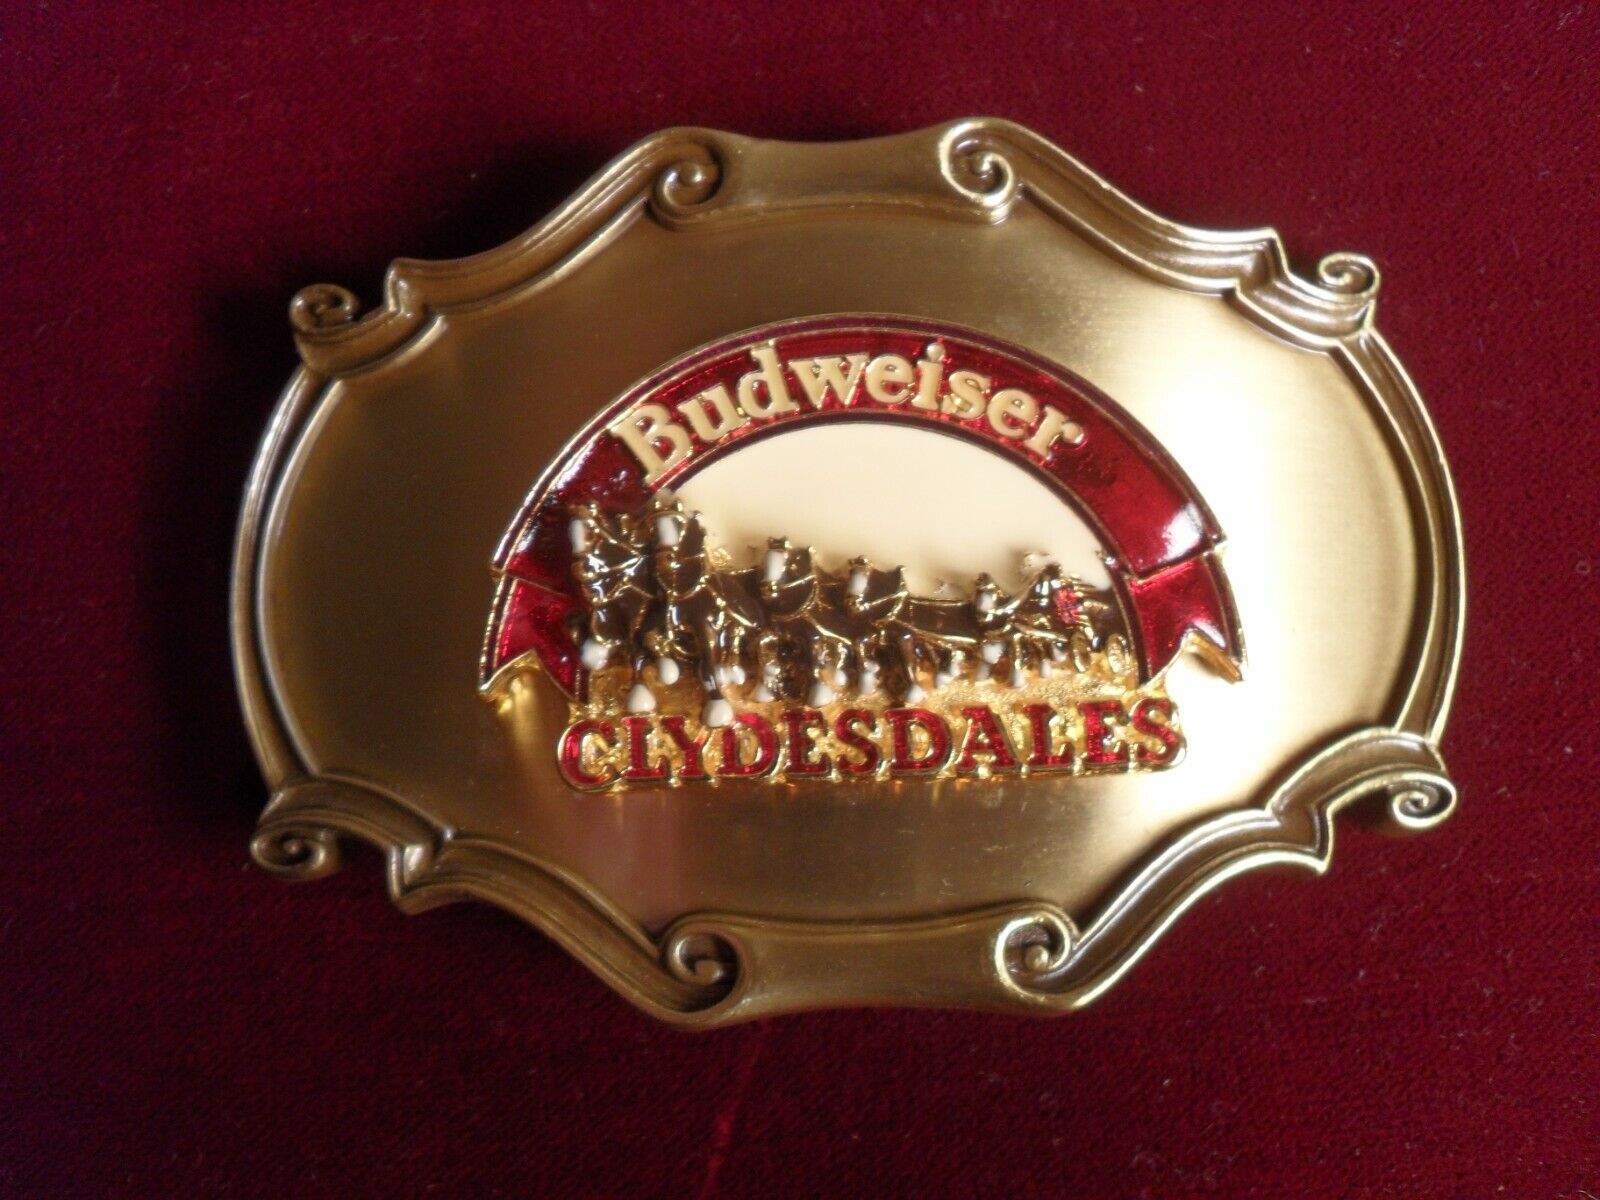 Budweiser Clydesdale 3-D Sculptured Belt Buckle From 1978 But NEW Salesman Sampl